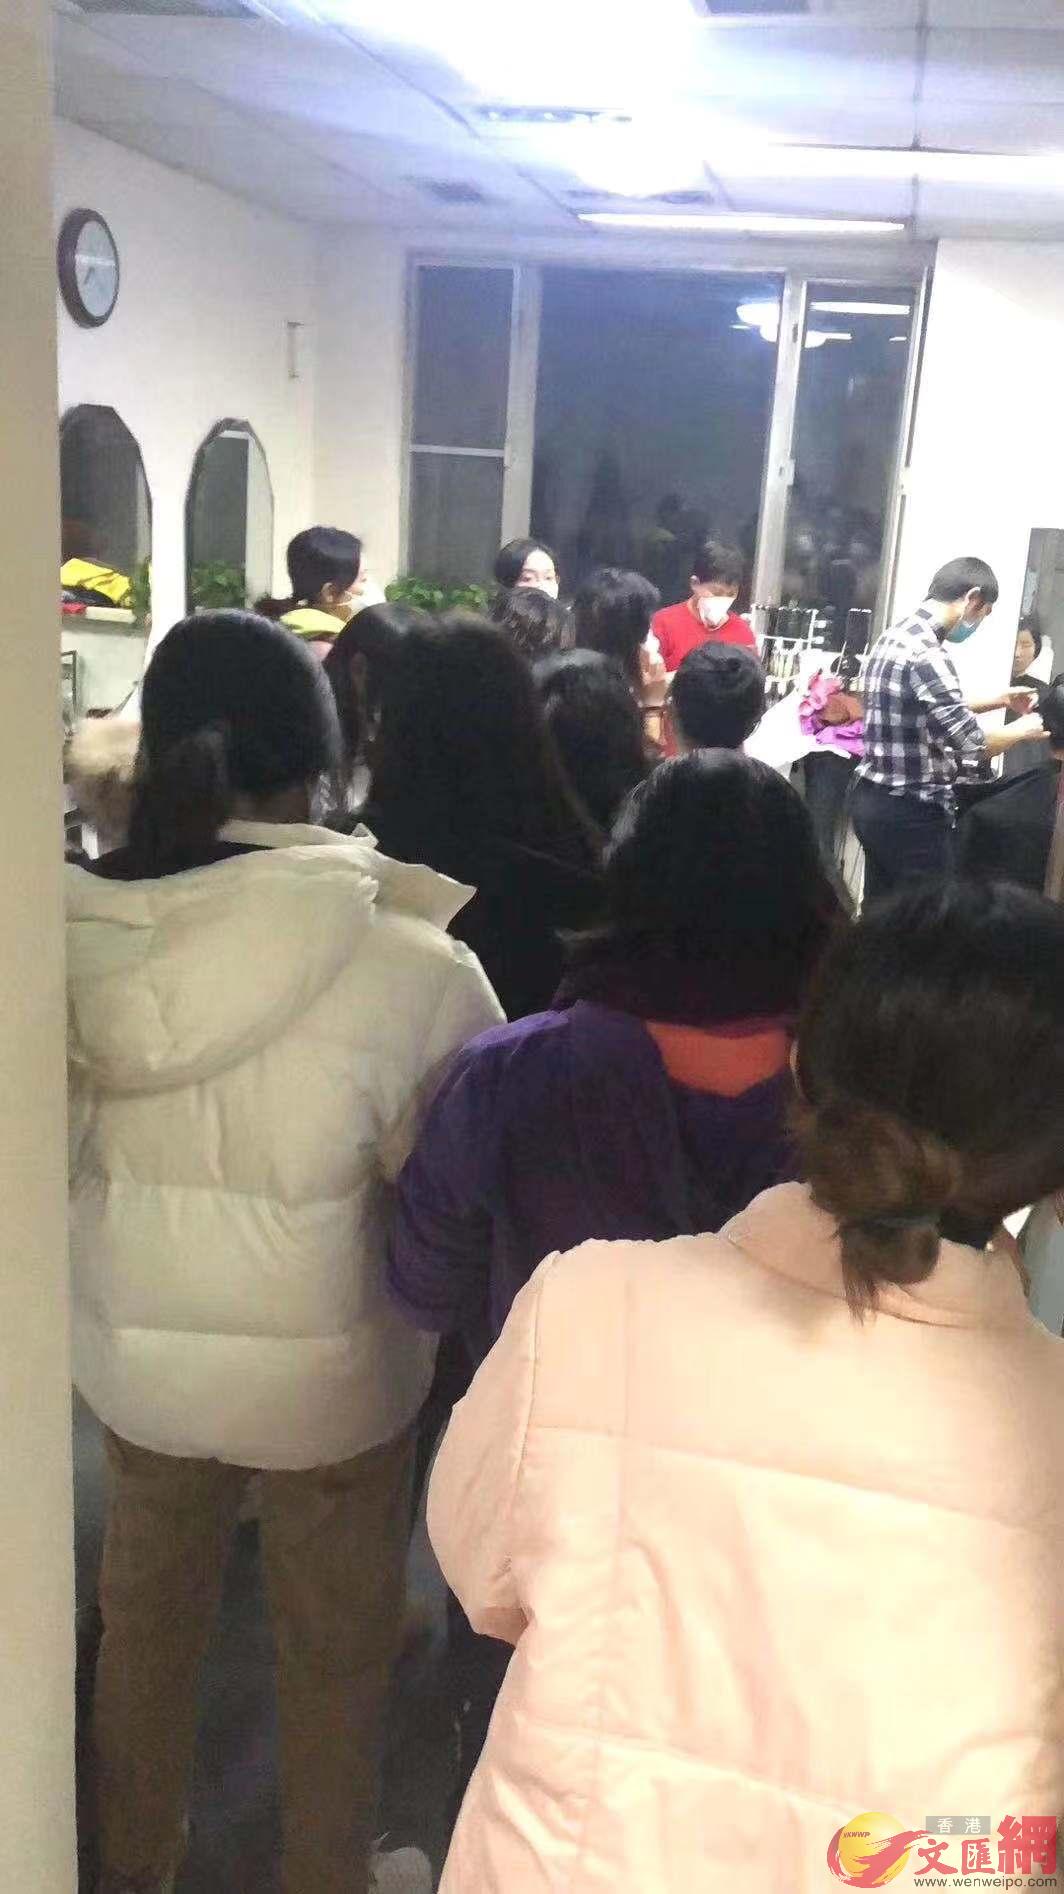 昨晚北京醫院理髮室A即將出征的醫生護士們在排隊剪頭髮C